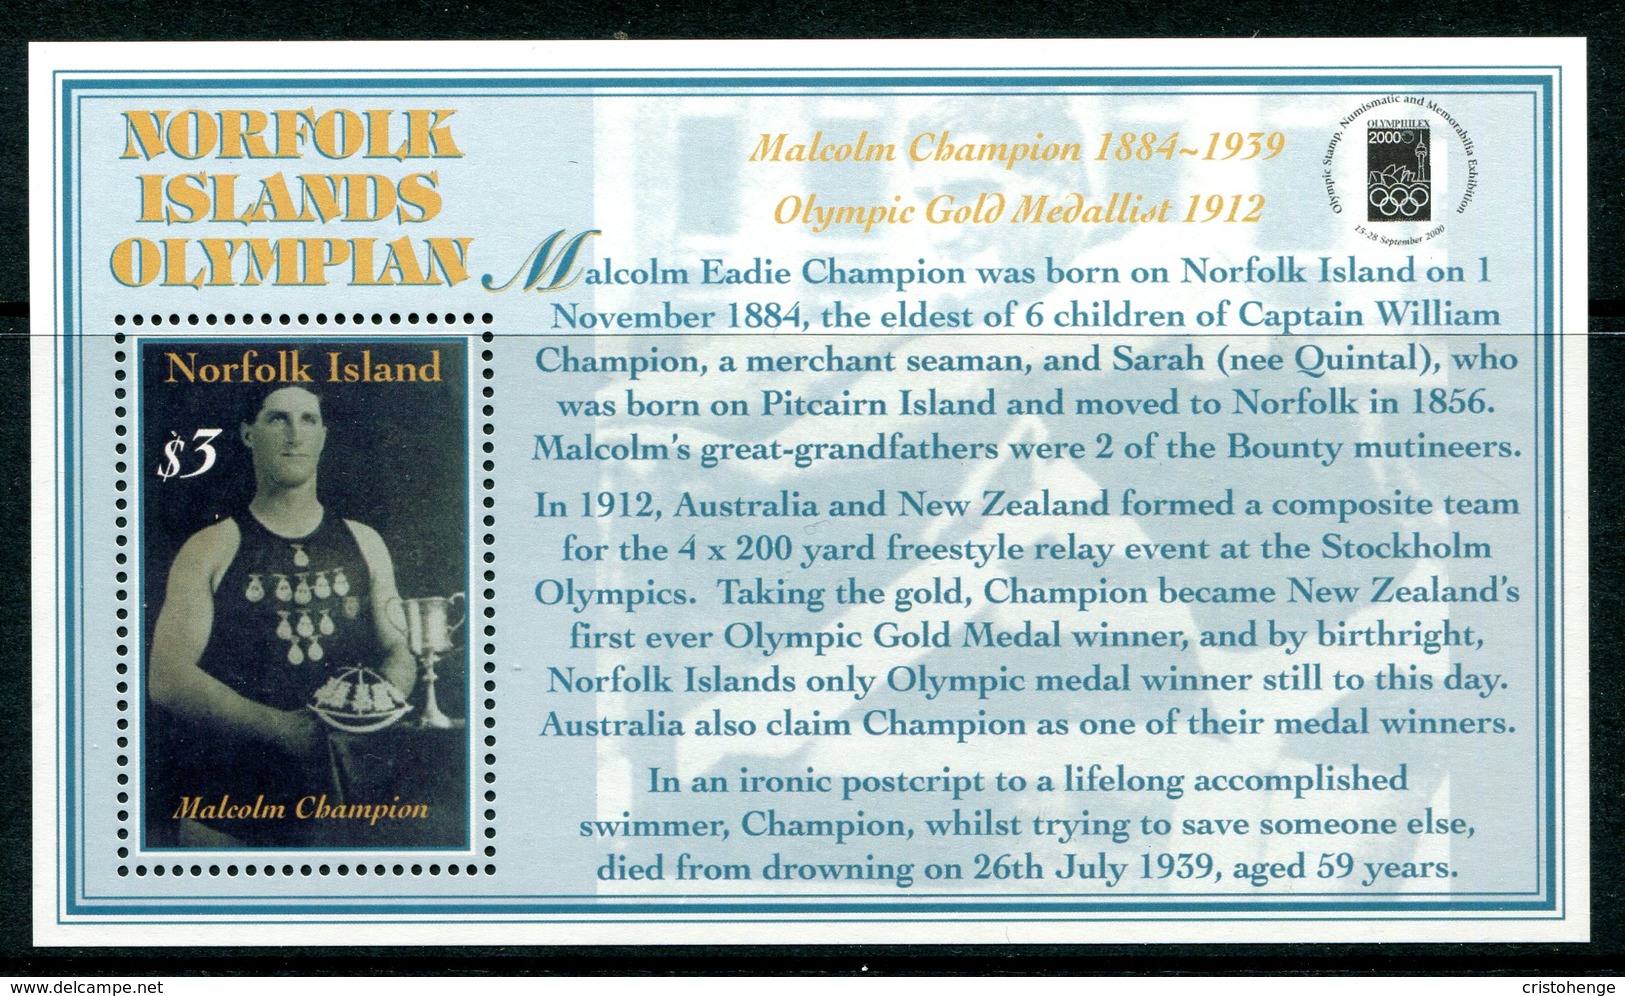 Norfolk Island 2000 Olymphilex 2000 Stamp Exhibition MS MNH (SG MS737) - Norfolk Island